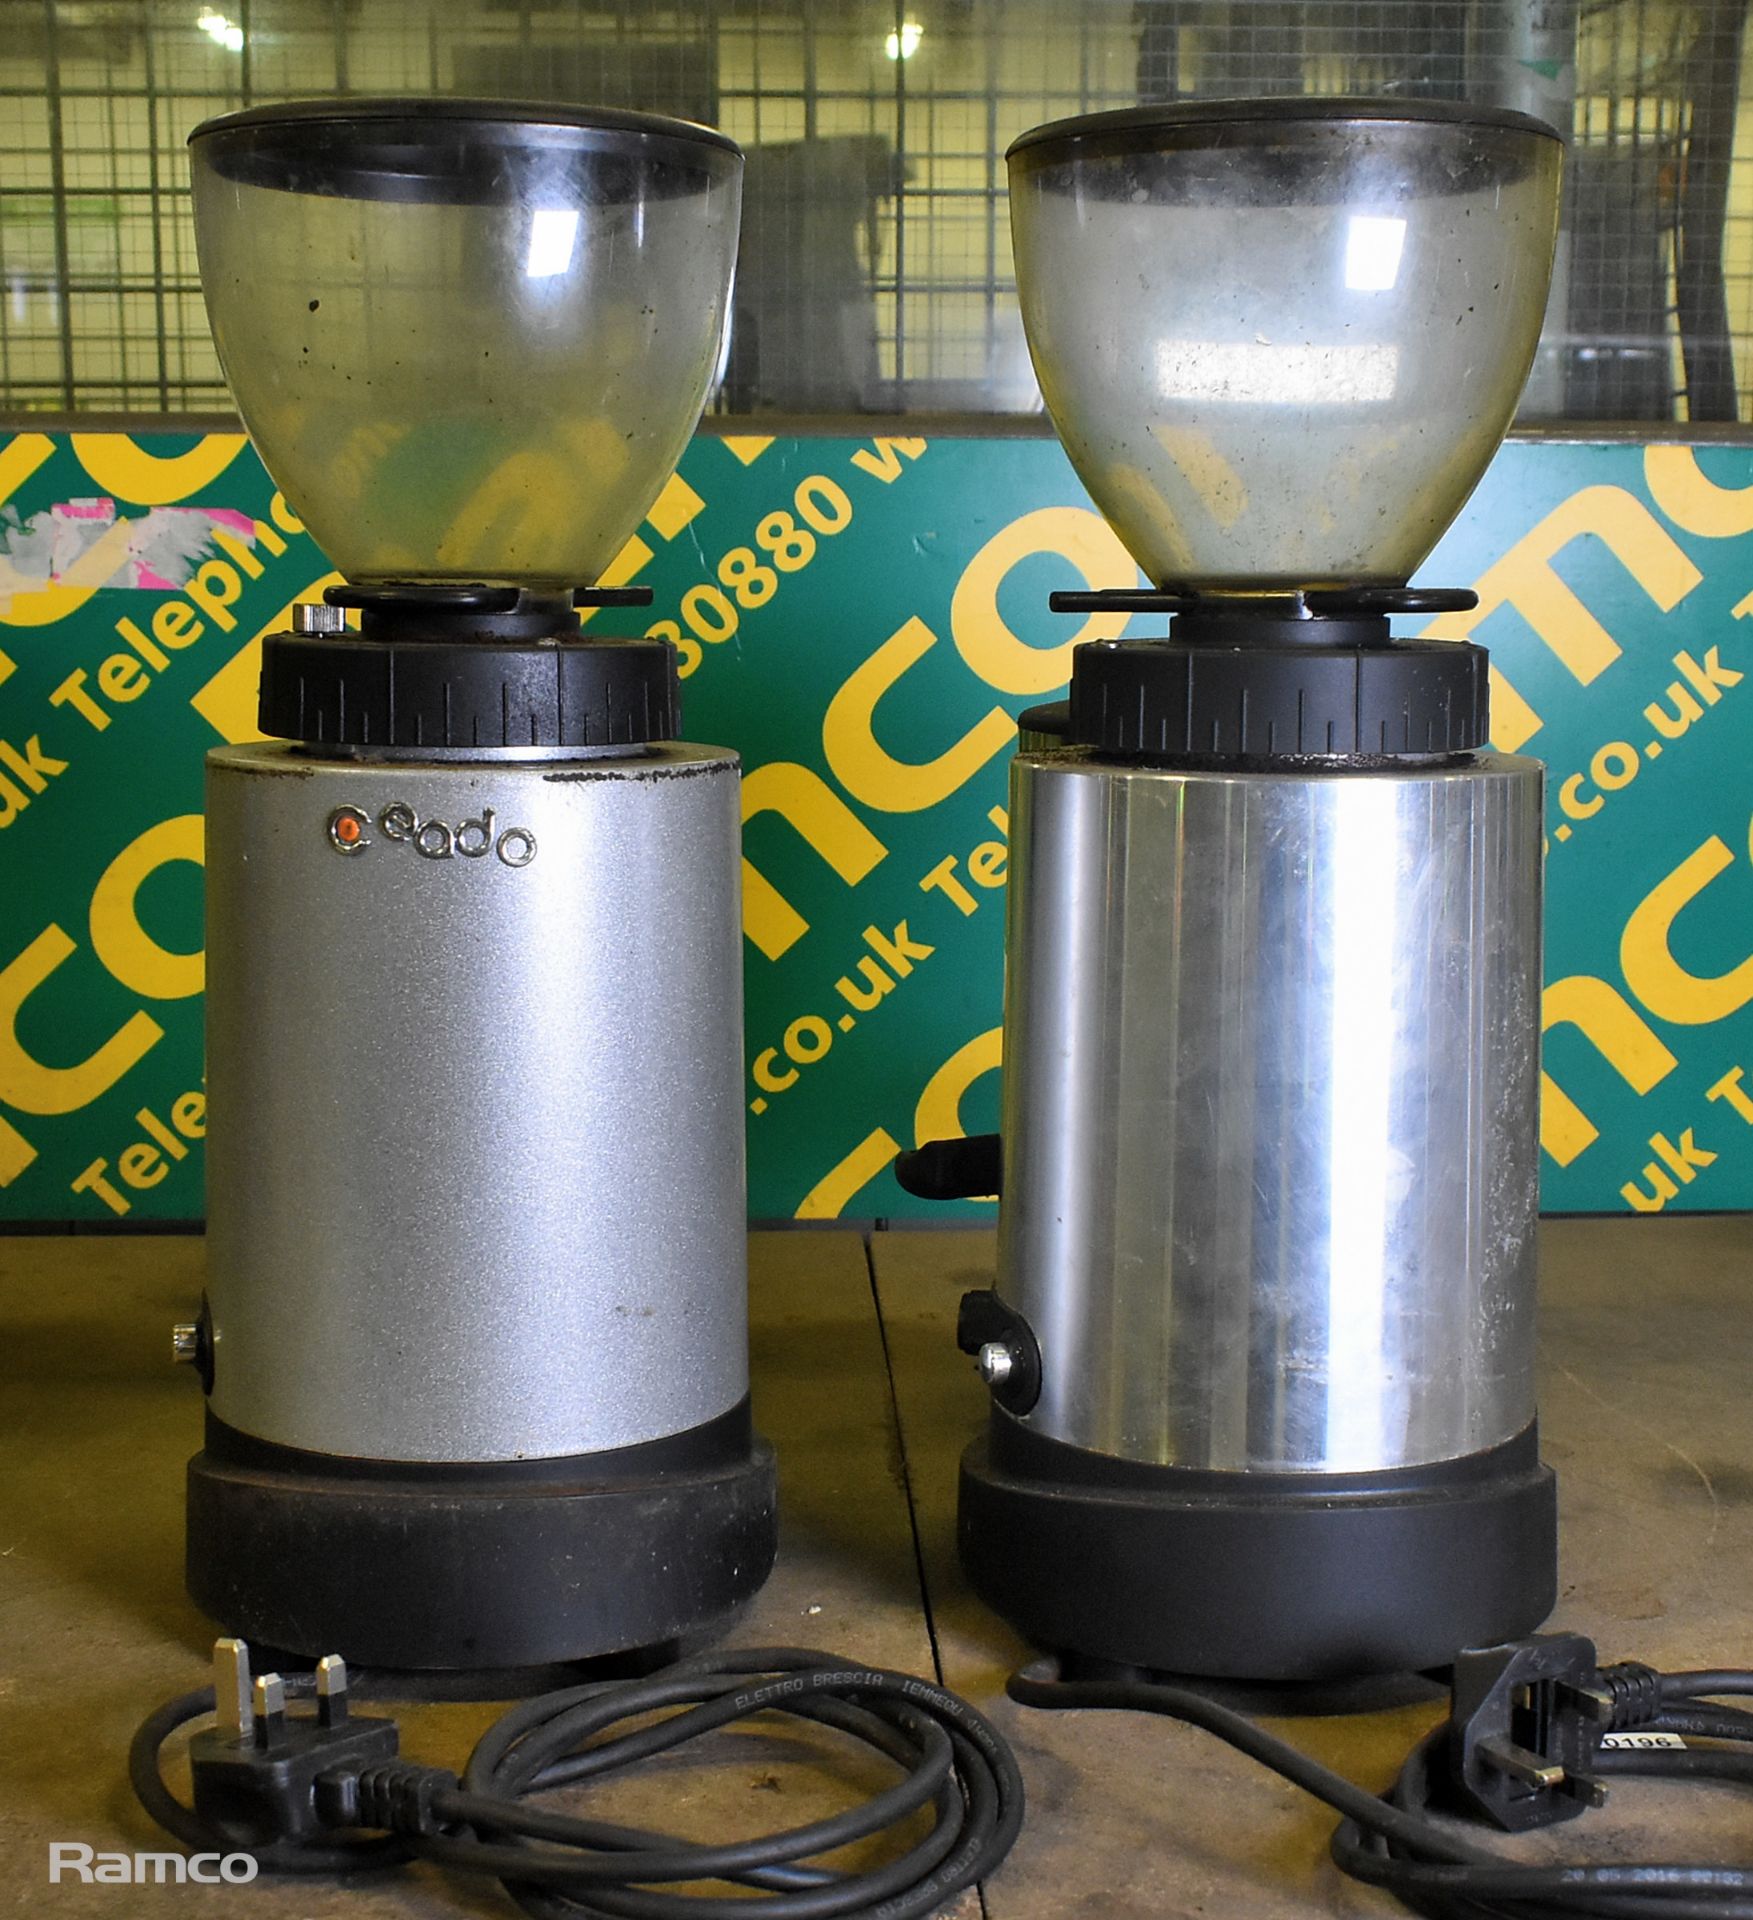 Ceado E6X espresso coffee grinder, Ceado E6P espresso coffee grinder - Image 3 of 6